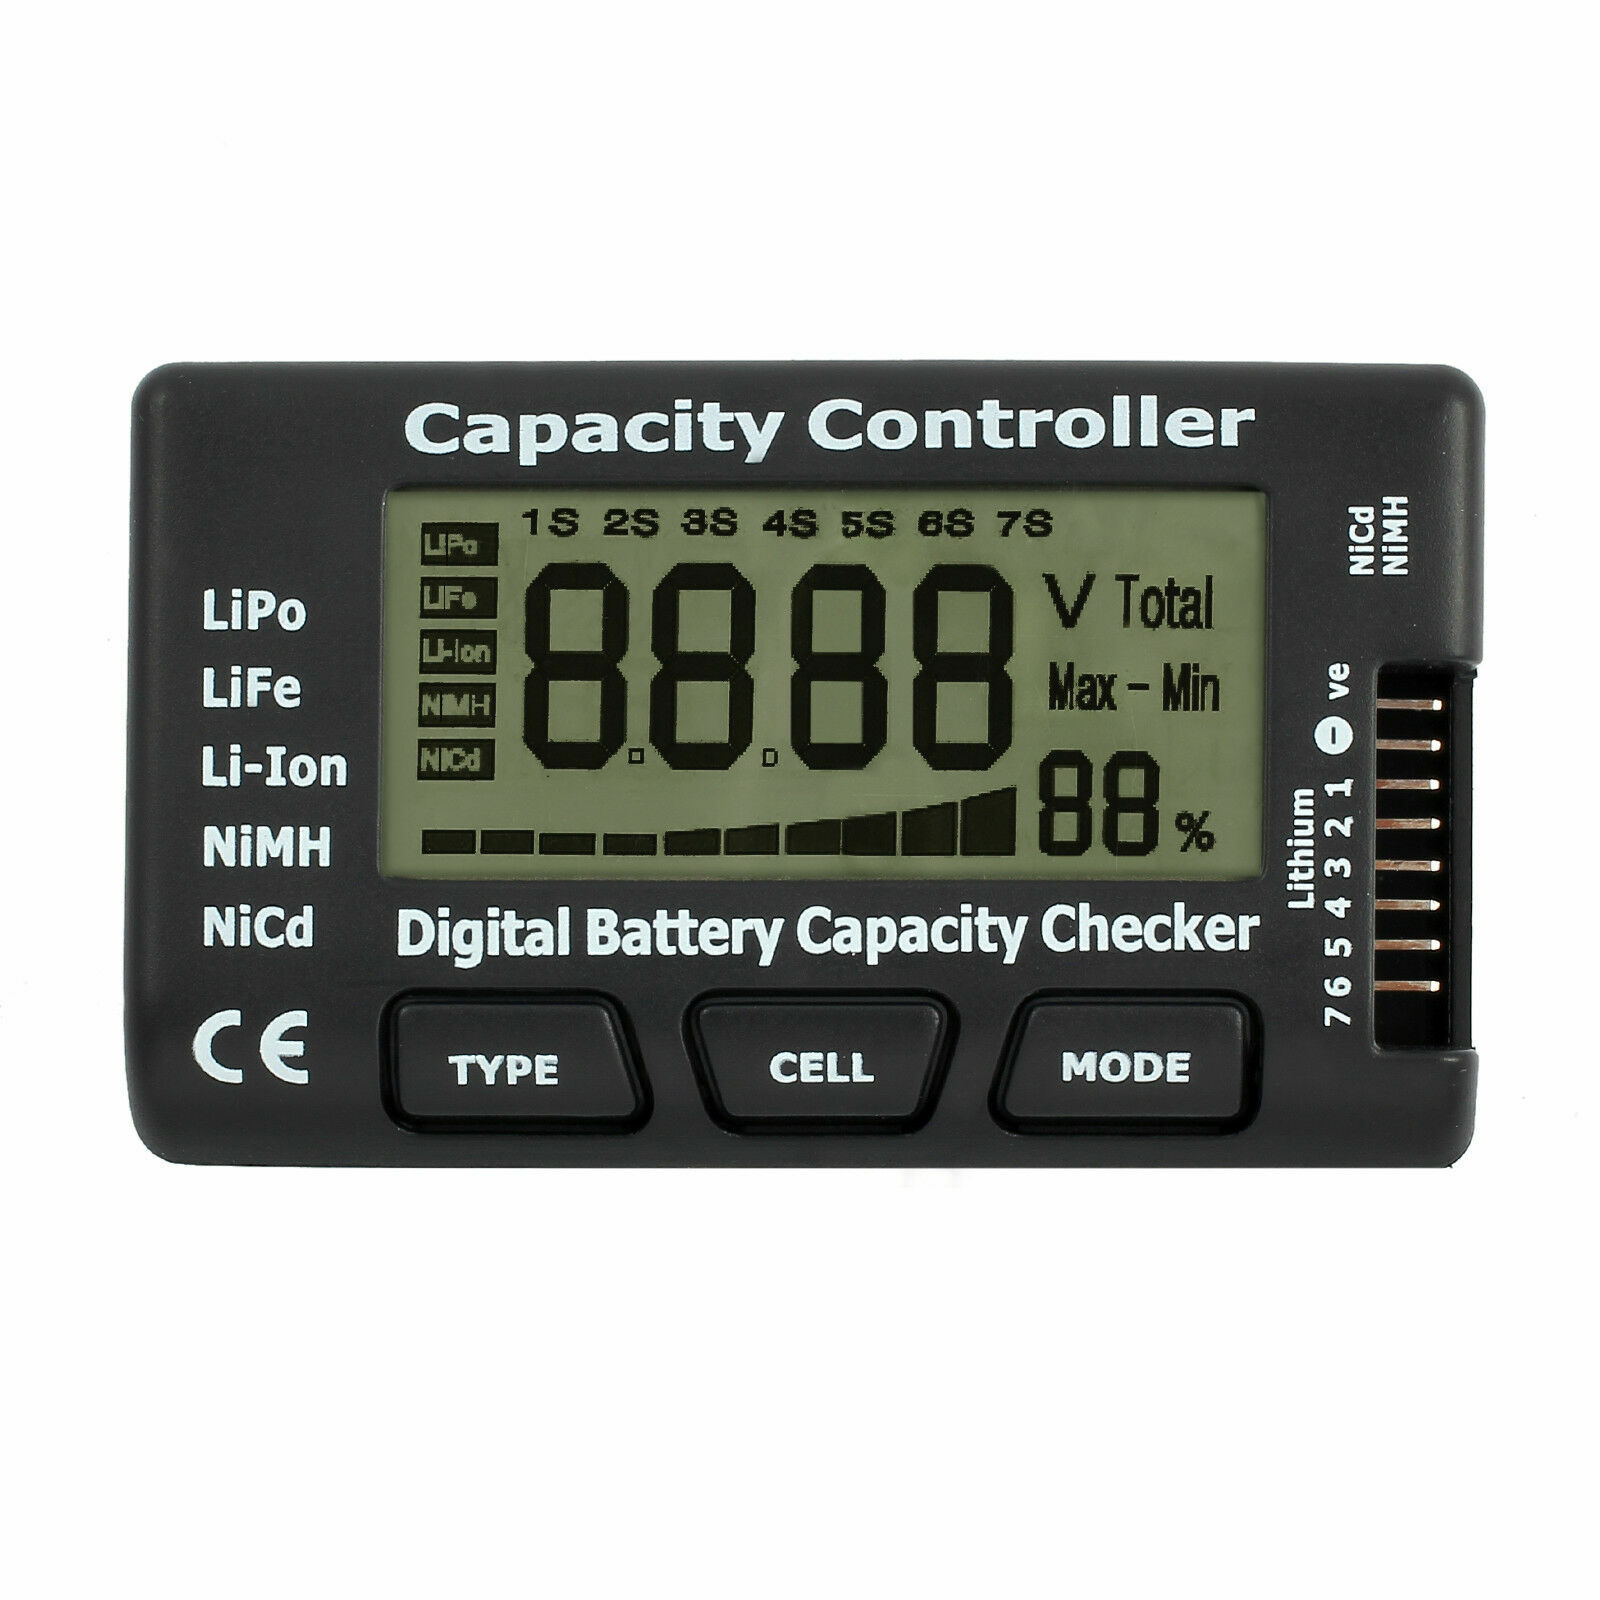 Tester di controllo della capacità della batteria digitale LCD per LiPo LiFe Li-ion NiMH